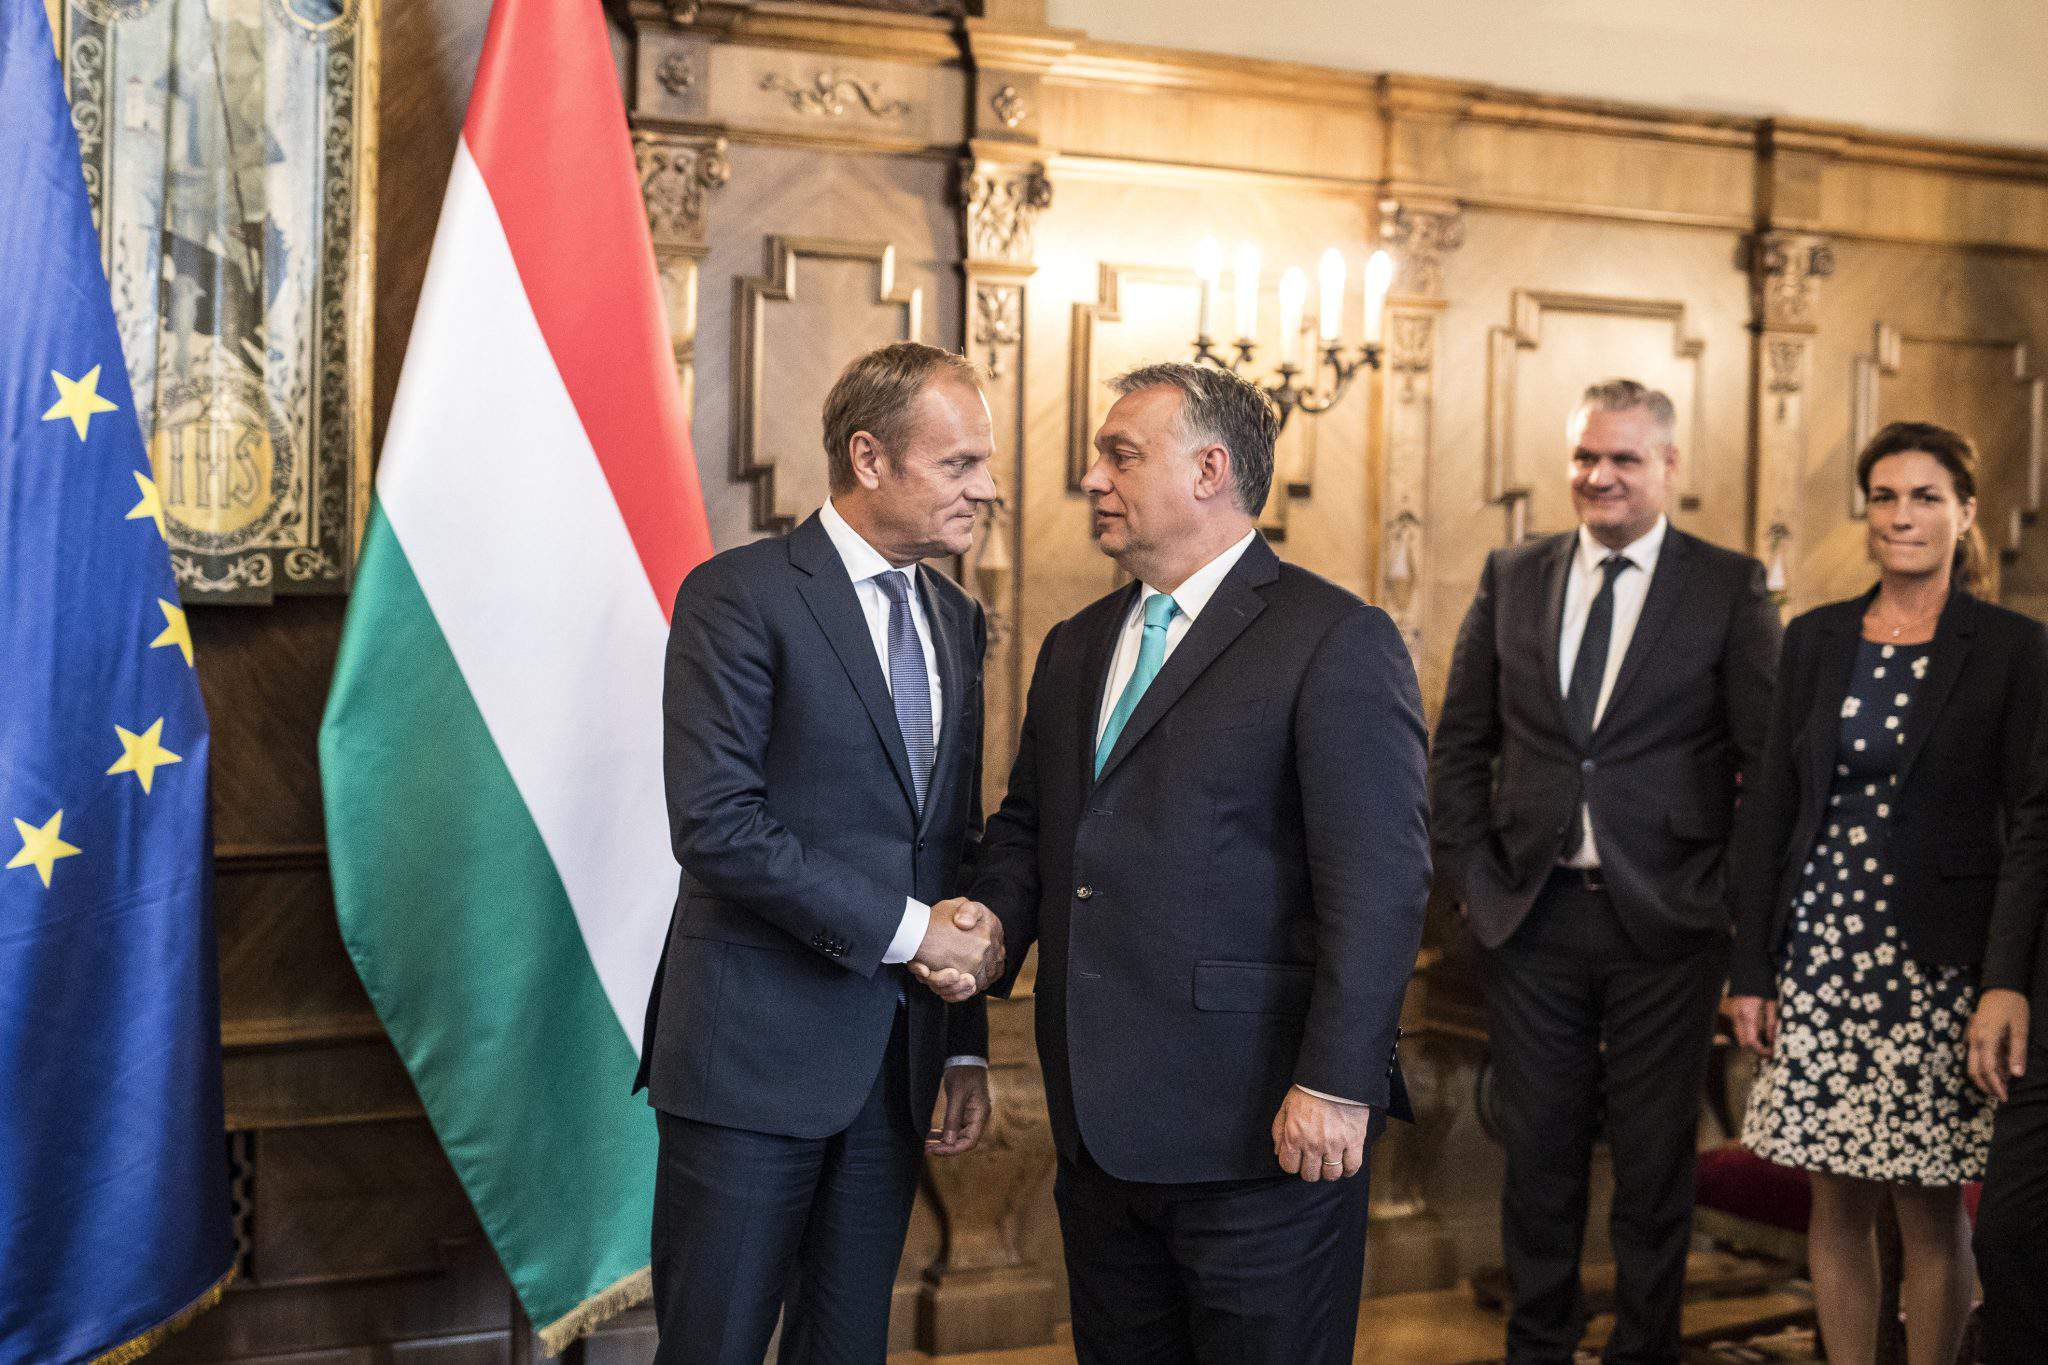 Hungary European Union Orbán Tusk